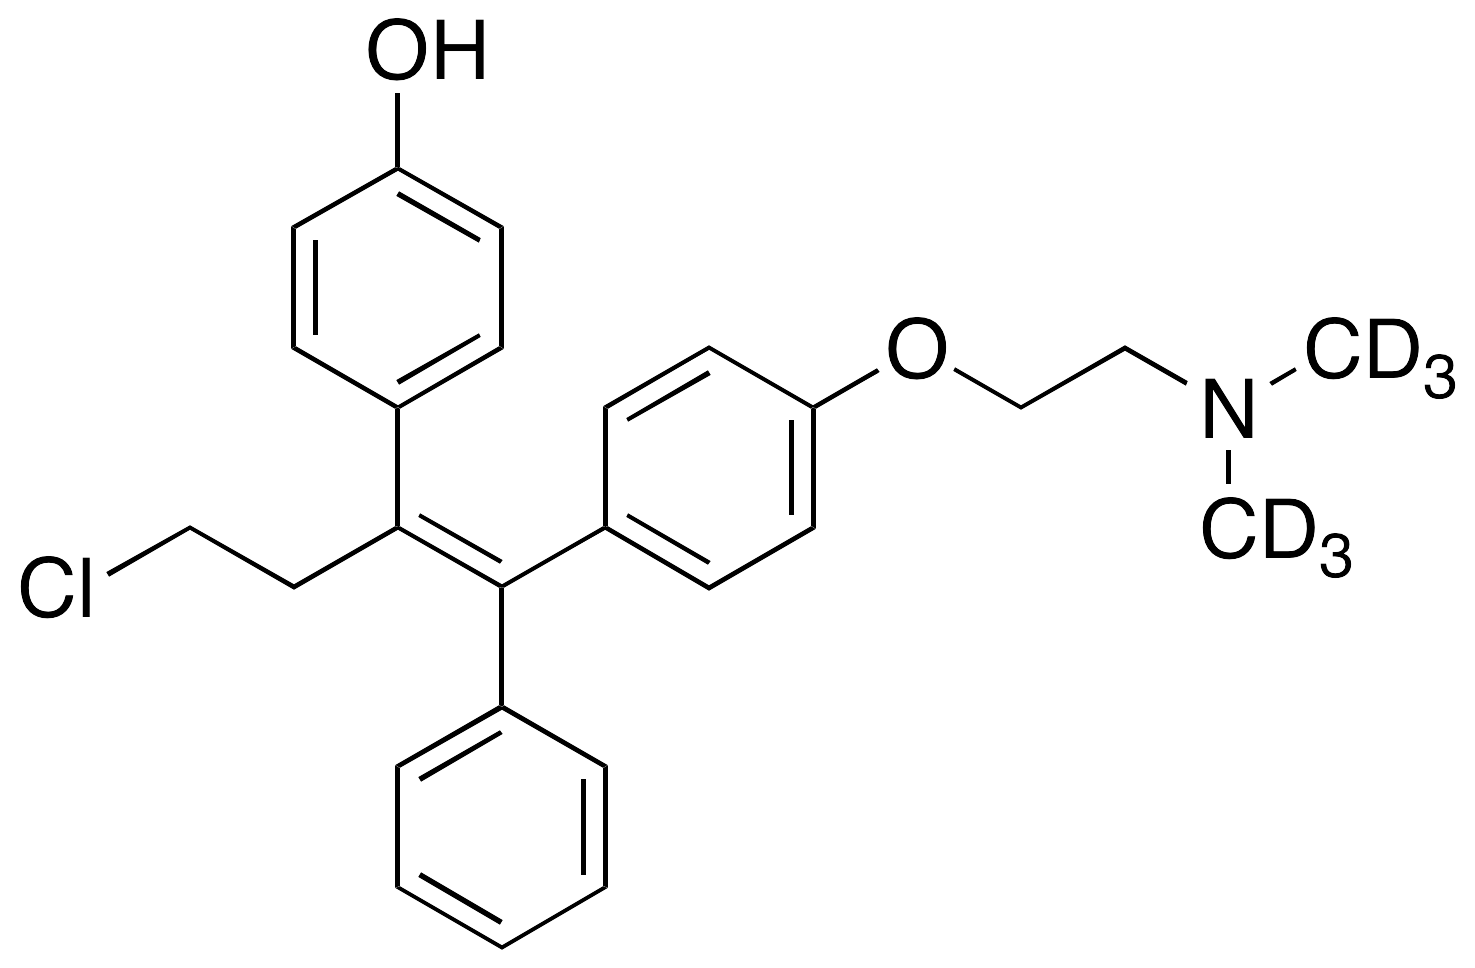 4’-Hydroxy Toremifene-d6